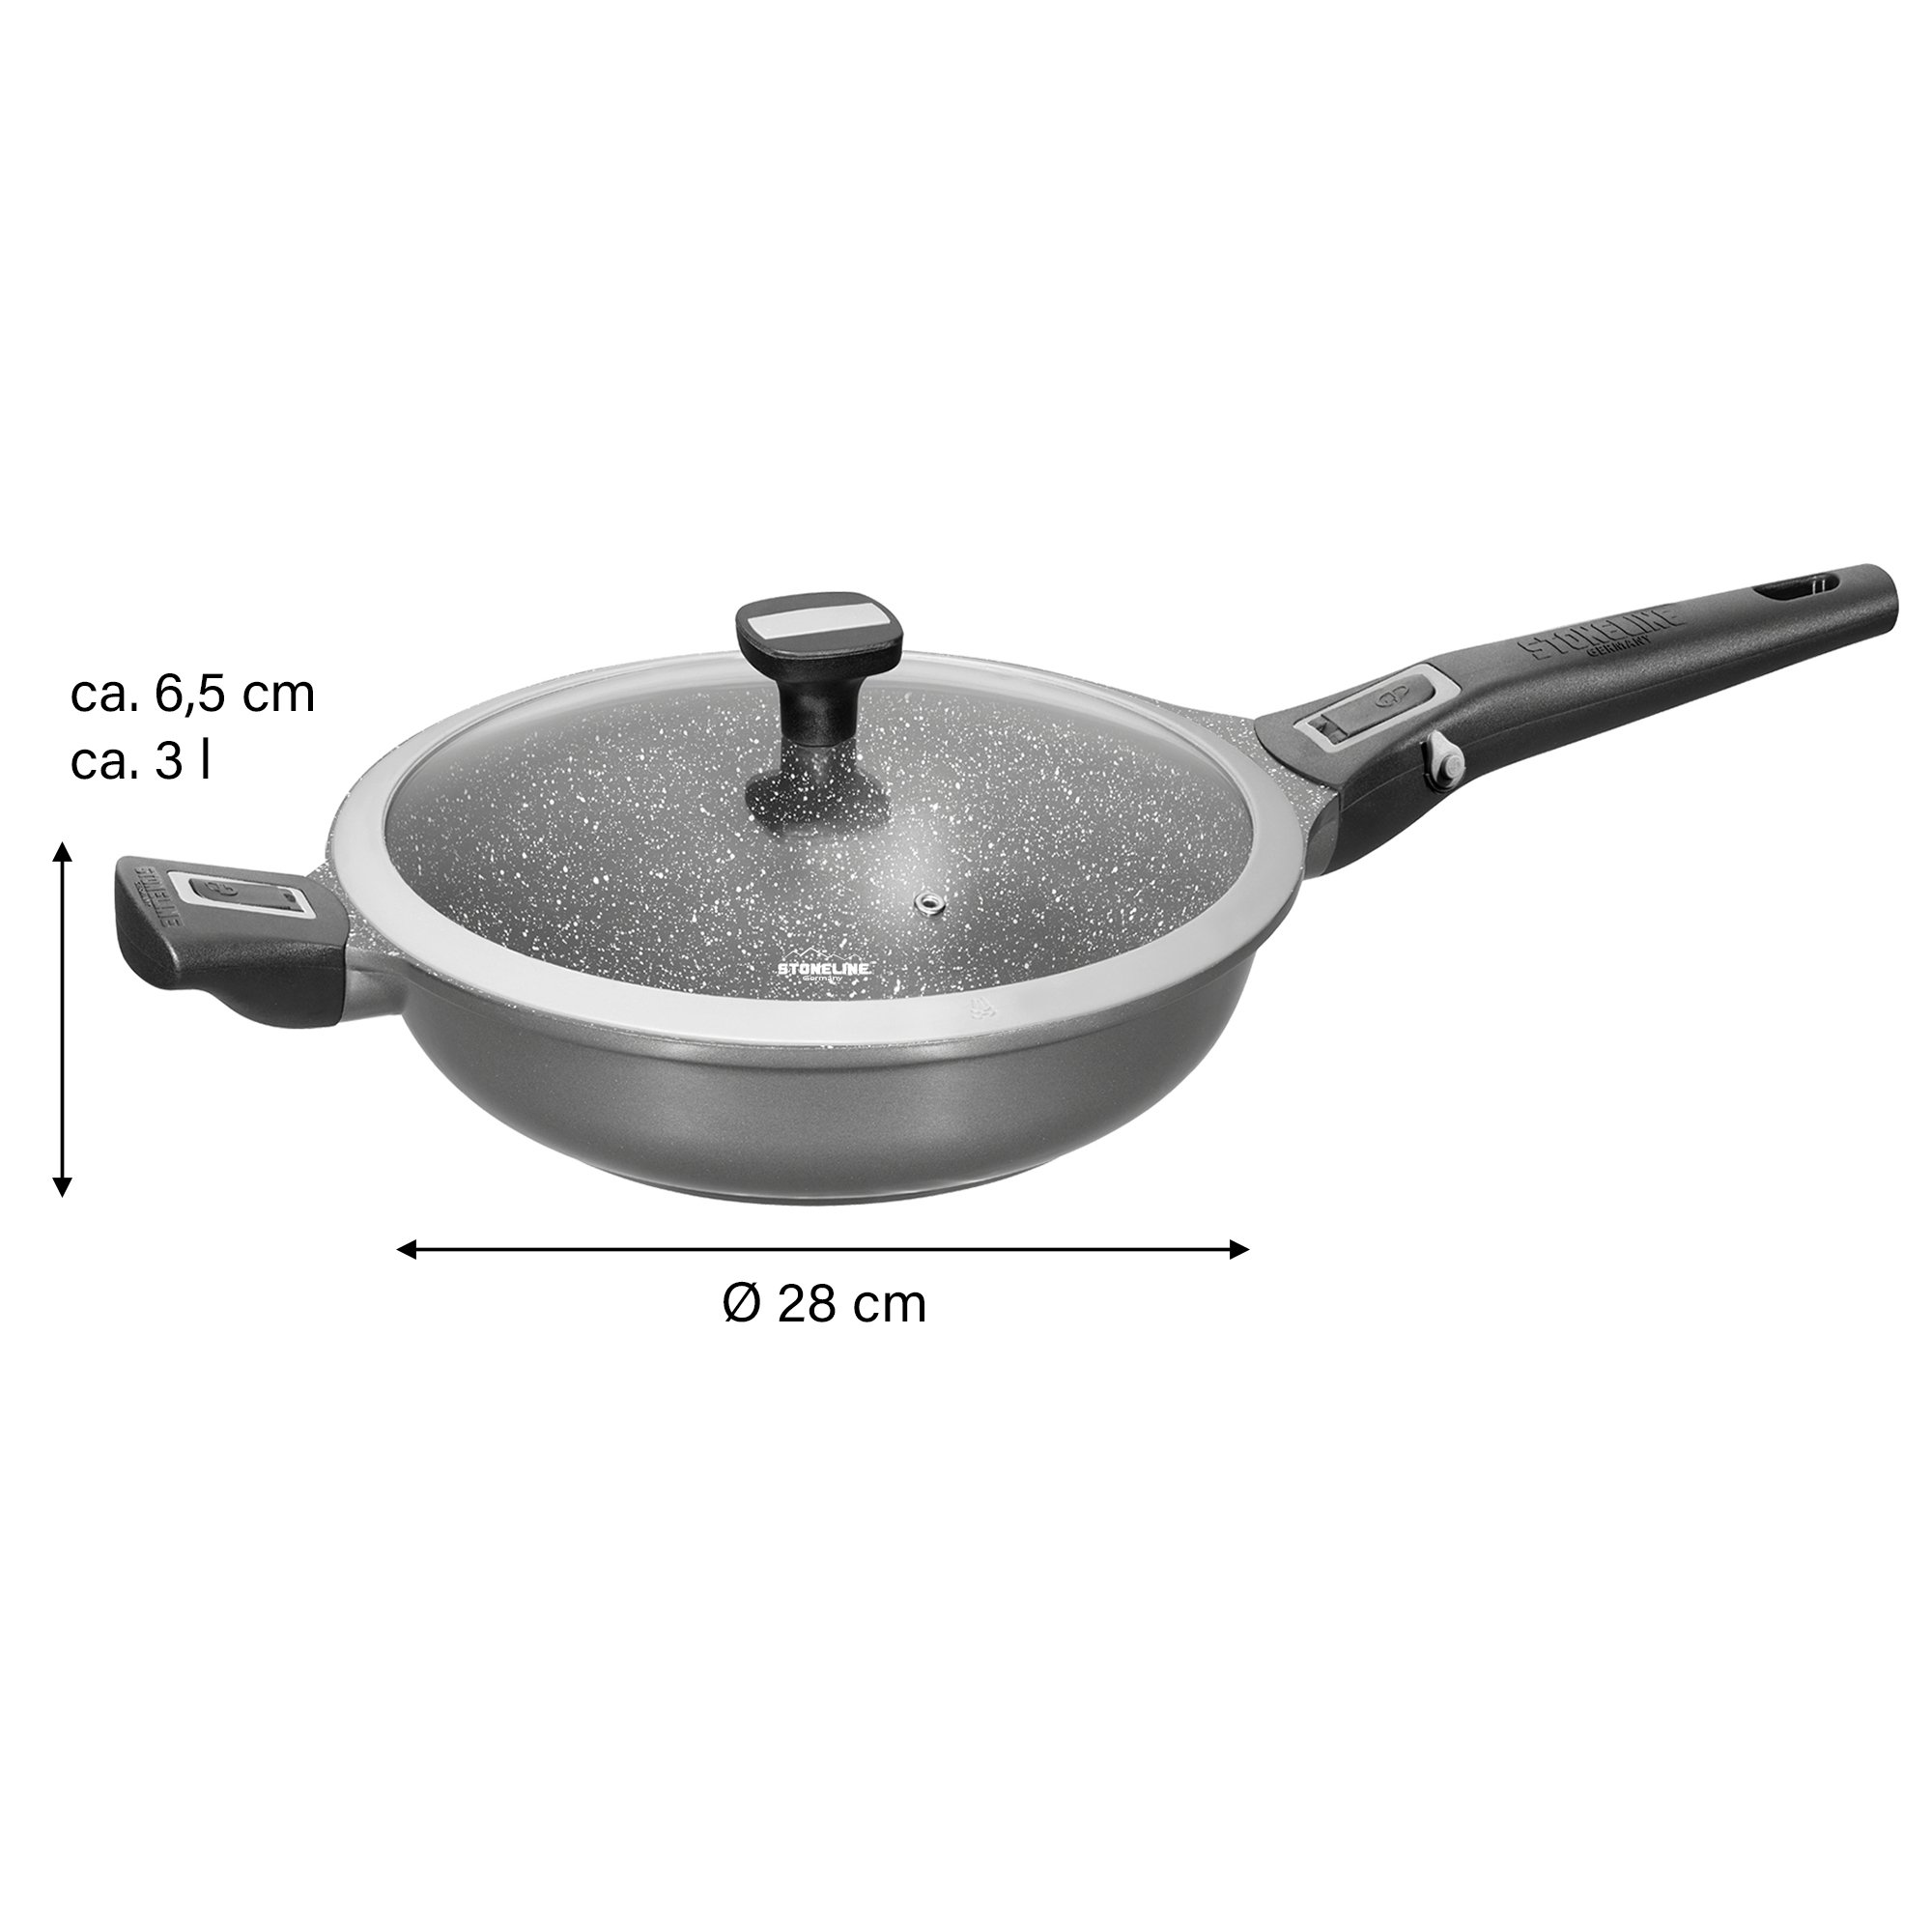 STONELINE® Deep Frying Pan 28 cm, Removable Handle, Lid, Non-Stick | Imagination PLUS